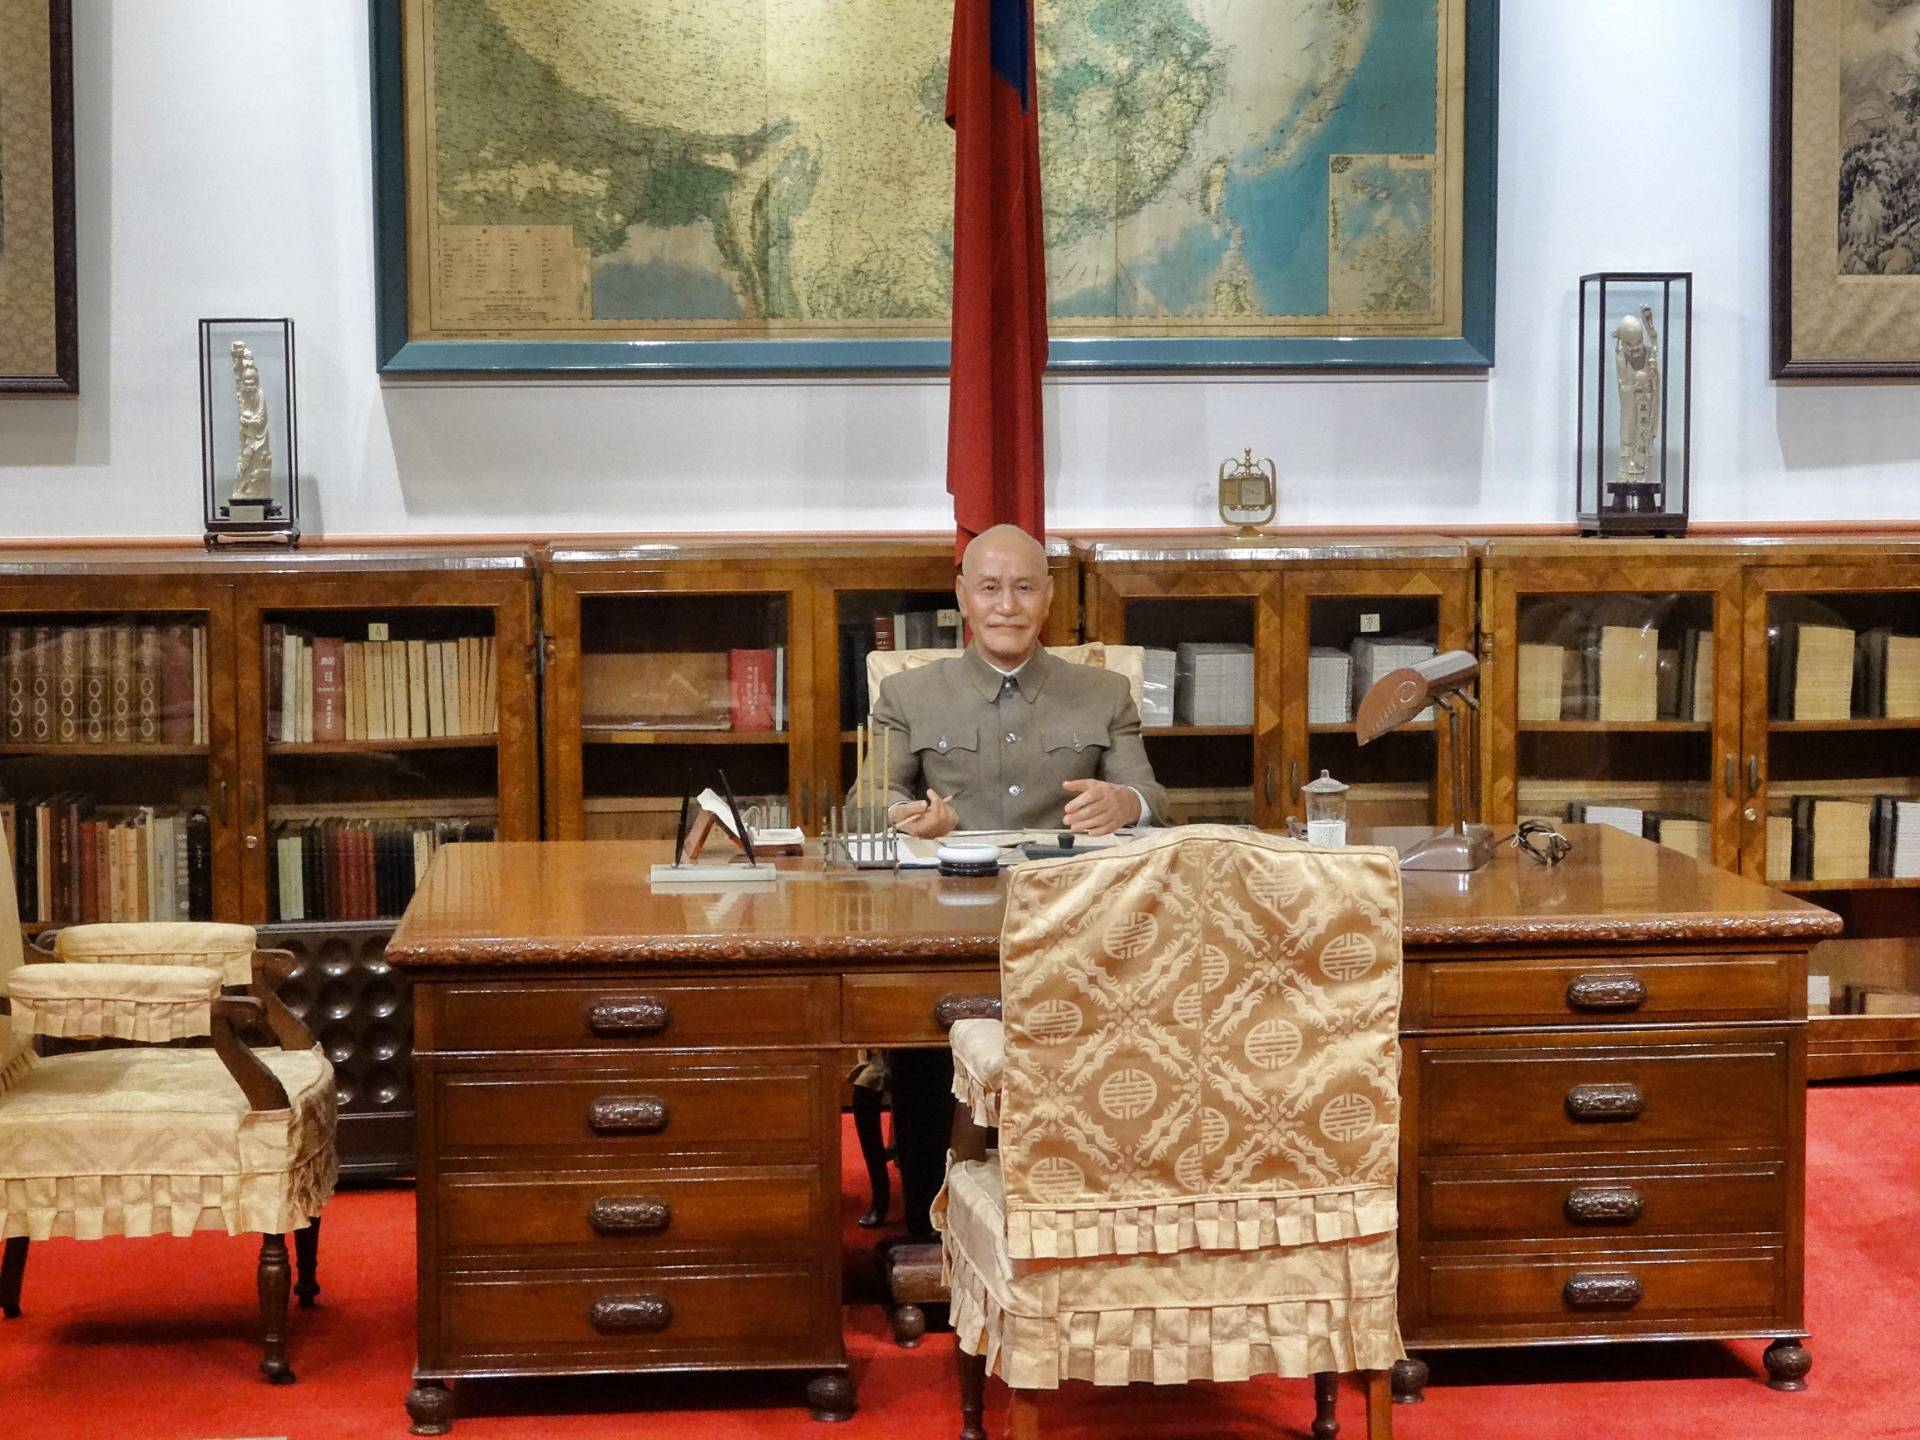 Chiang Kai-shek or ”CKS” himself is sitting behind the door